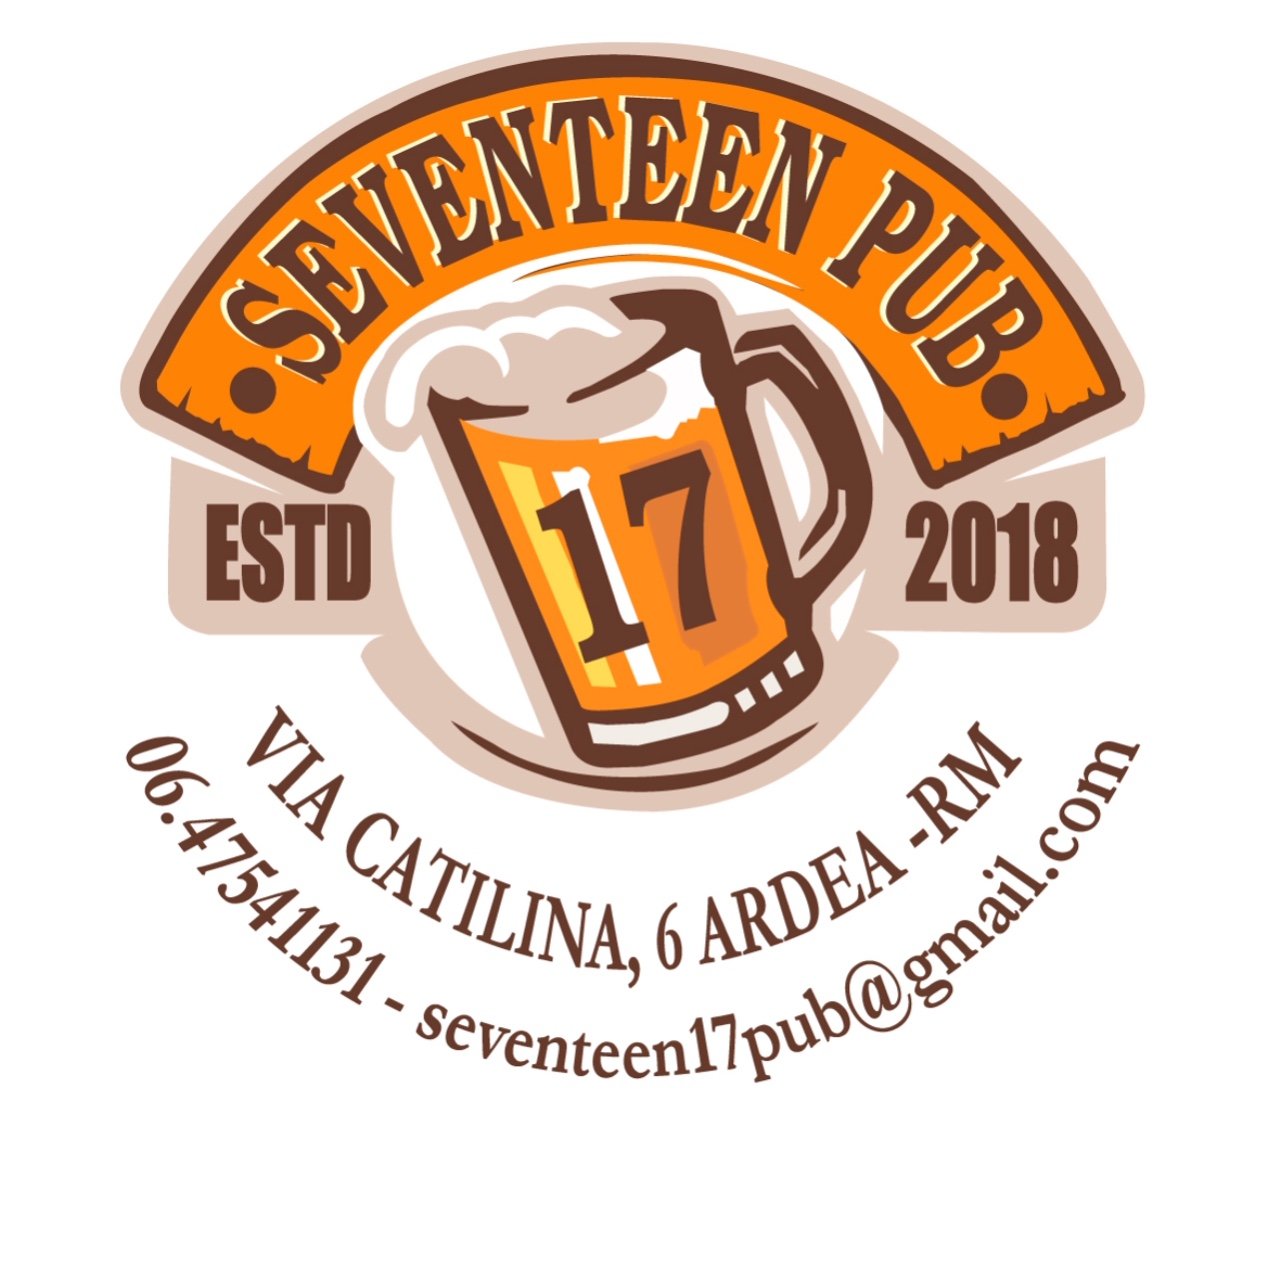 Seventeen Pub, Ardea